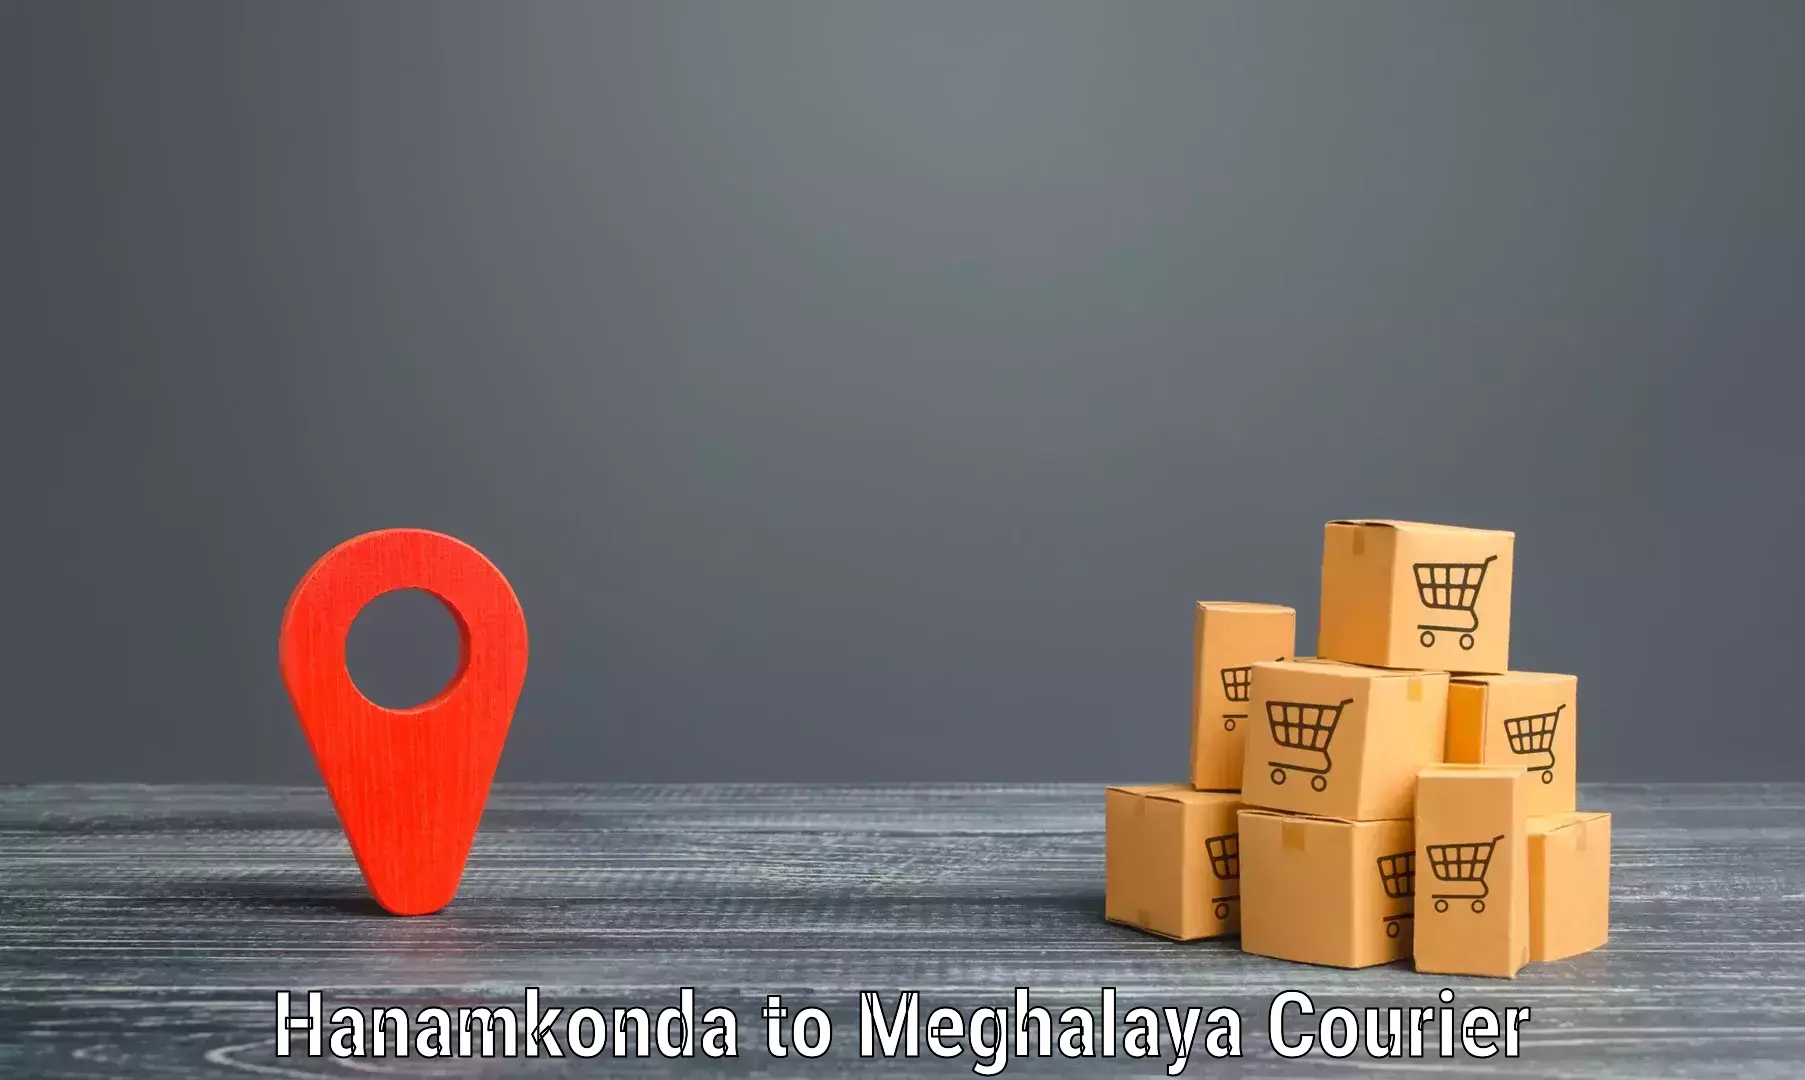 Reliable courier service Hanamkonda to Dkhiah West